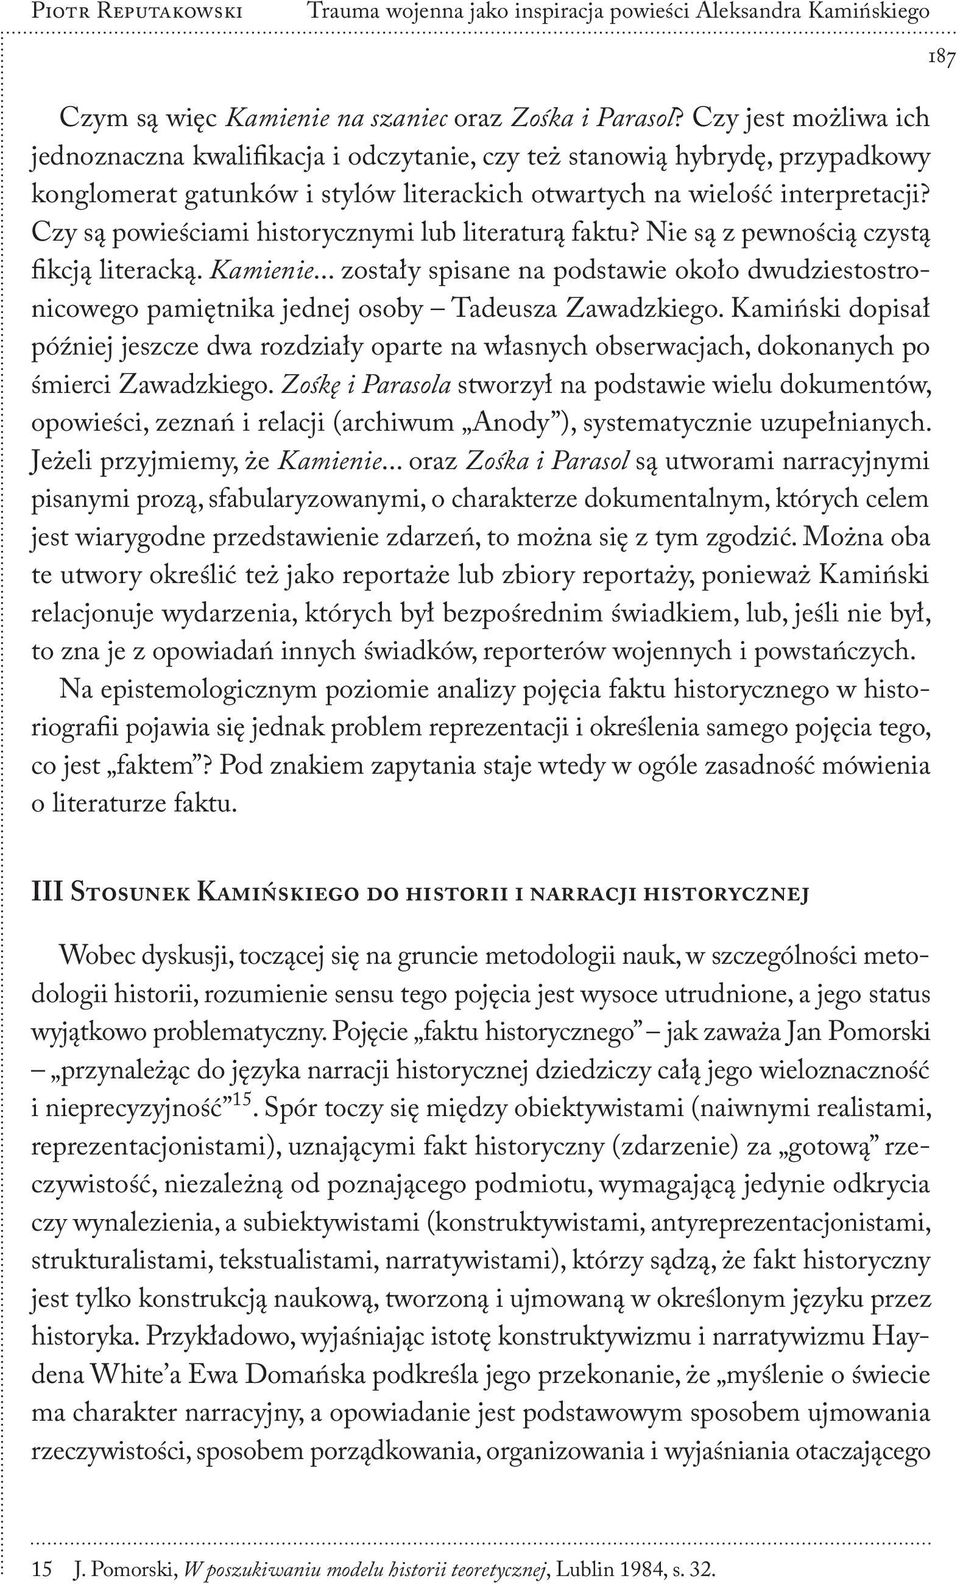 Trauma wojenna jako inspiracja powieści Aleksandra Kamińskiego - PDF Free  Download